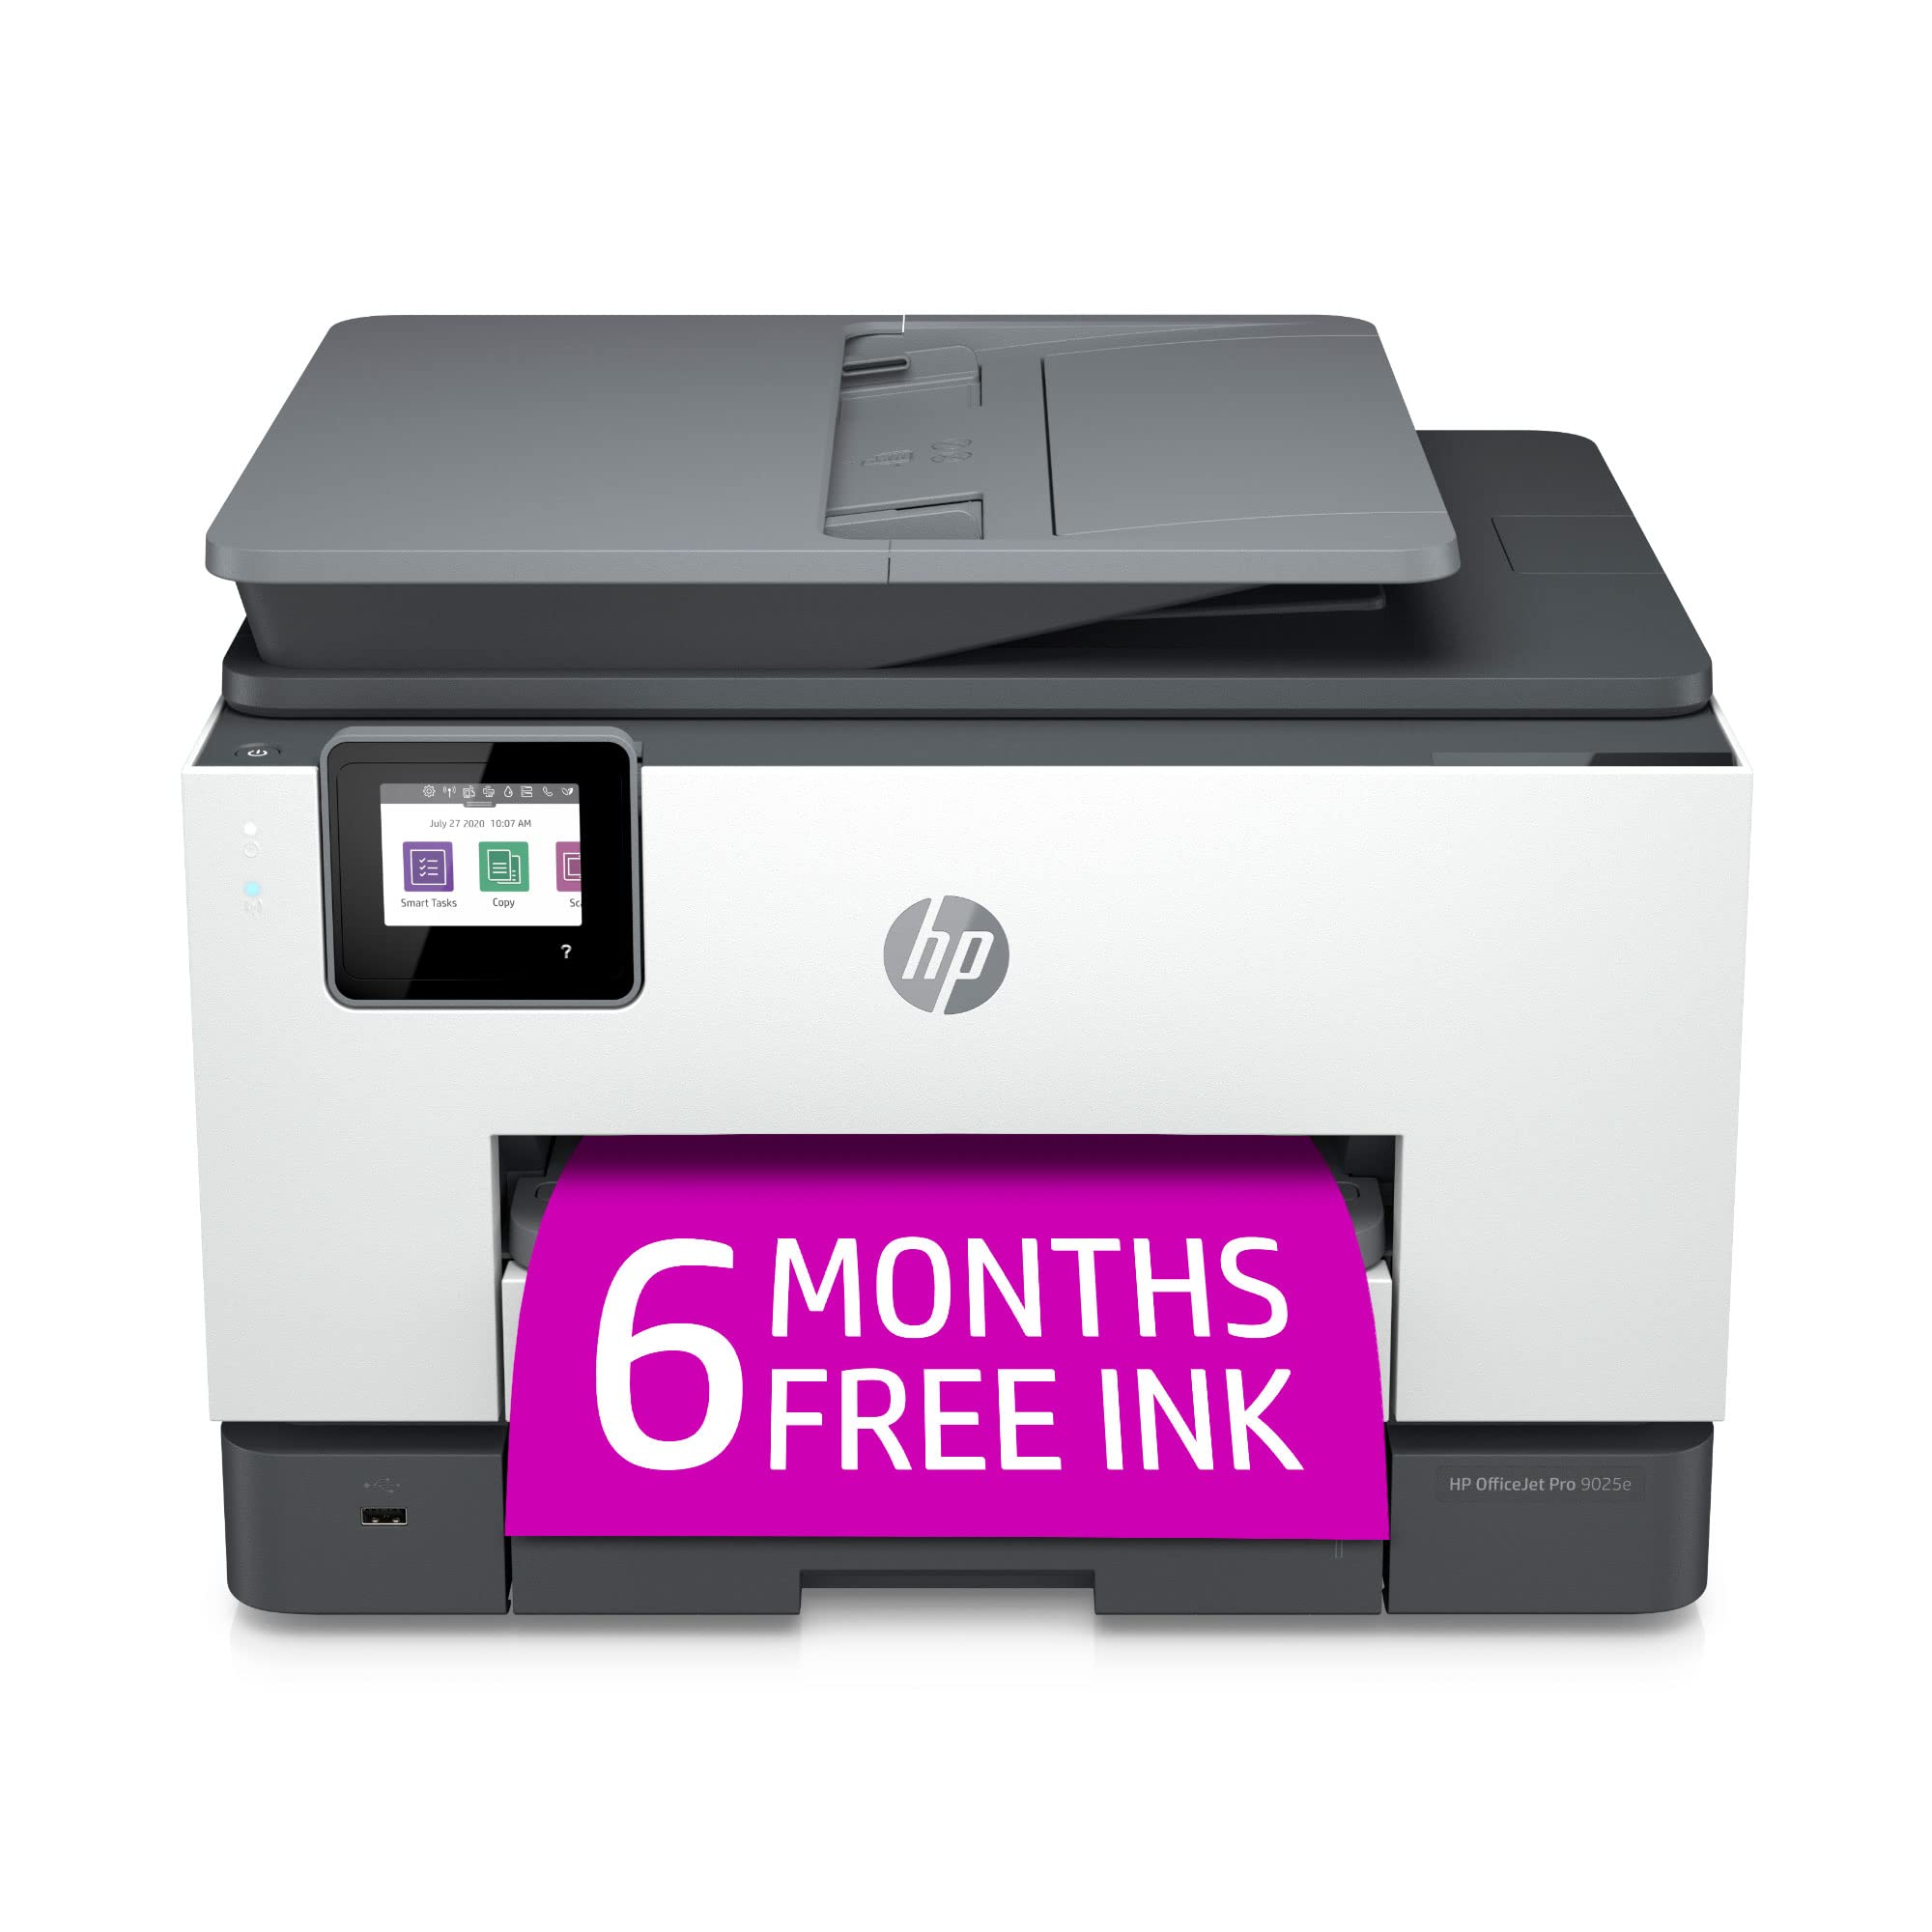 HP Bezprzewodowa kolorowa drukarka wielofunkcyjna OfficeJet Pro 9025e z dodatkowym dodatkowym 6-miesięcznym zapasem atramentu błyskawicznego z +